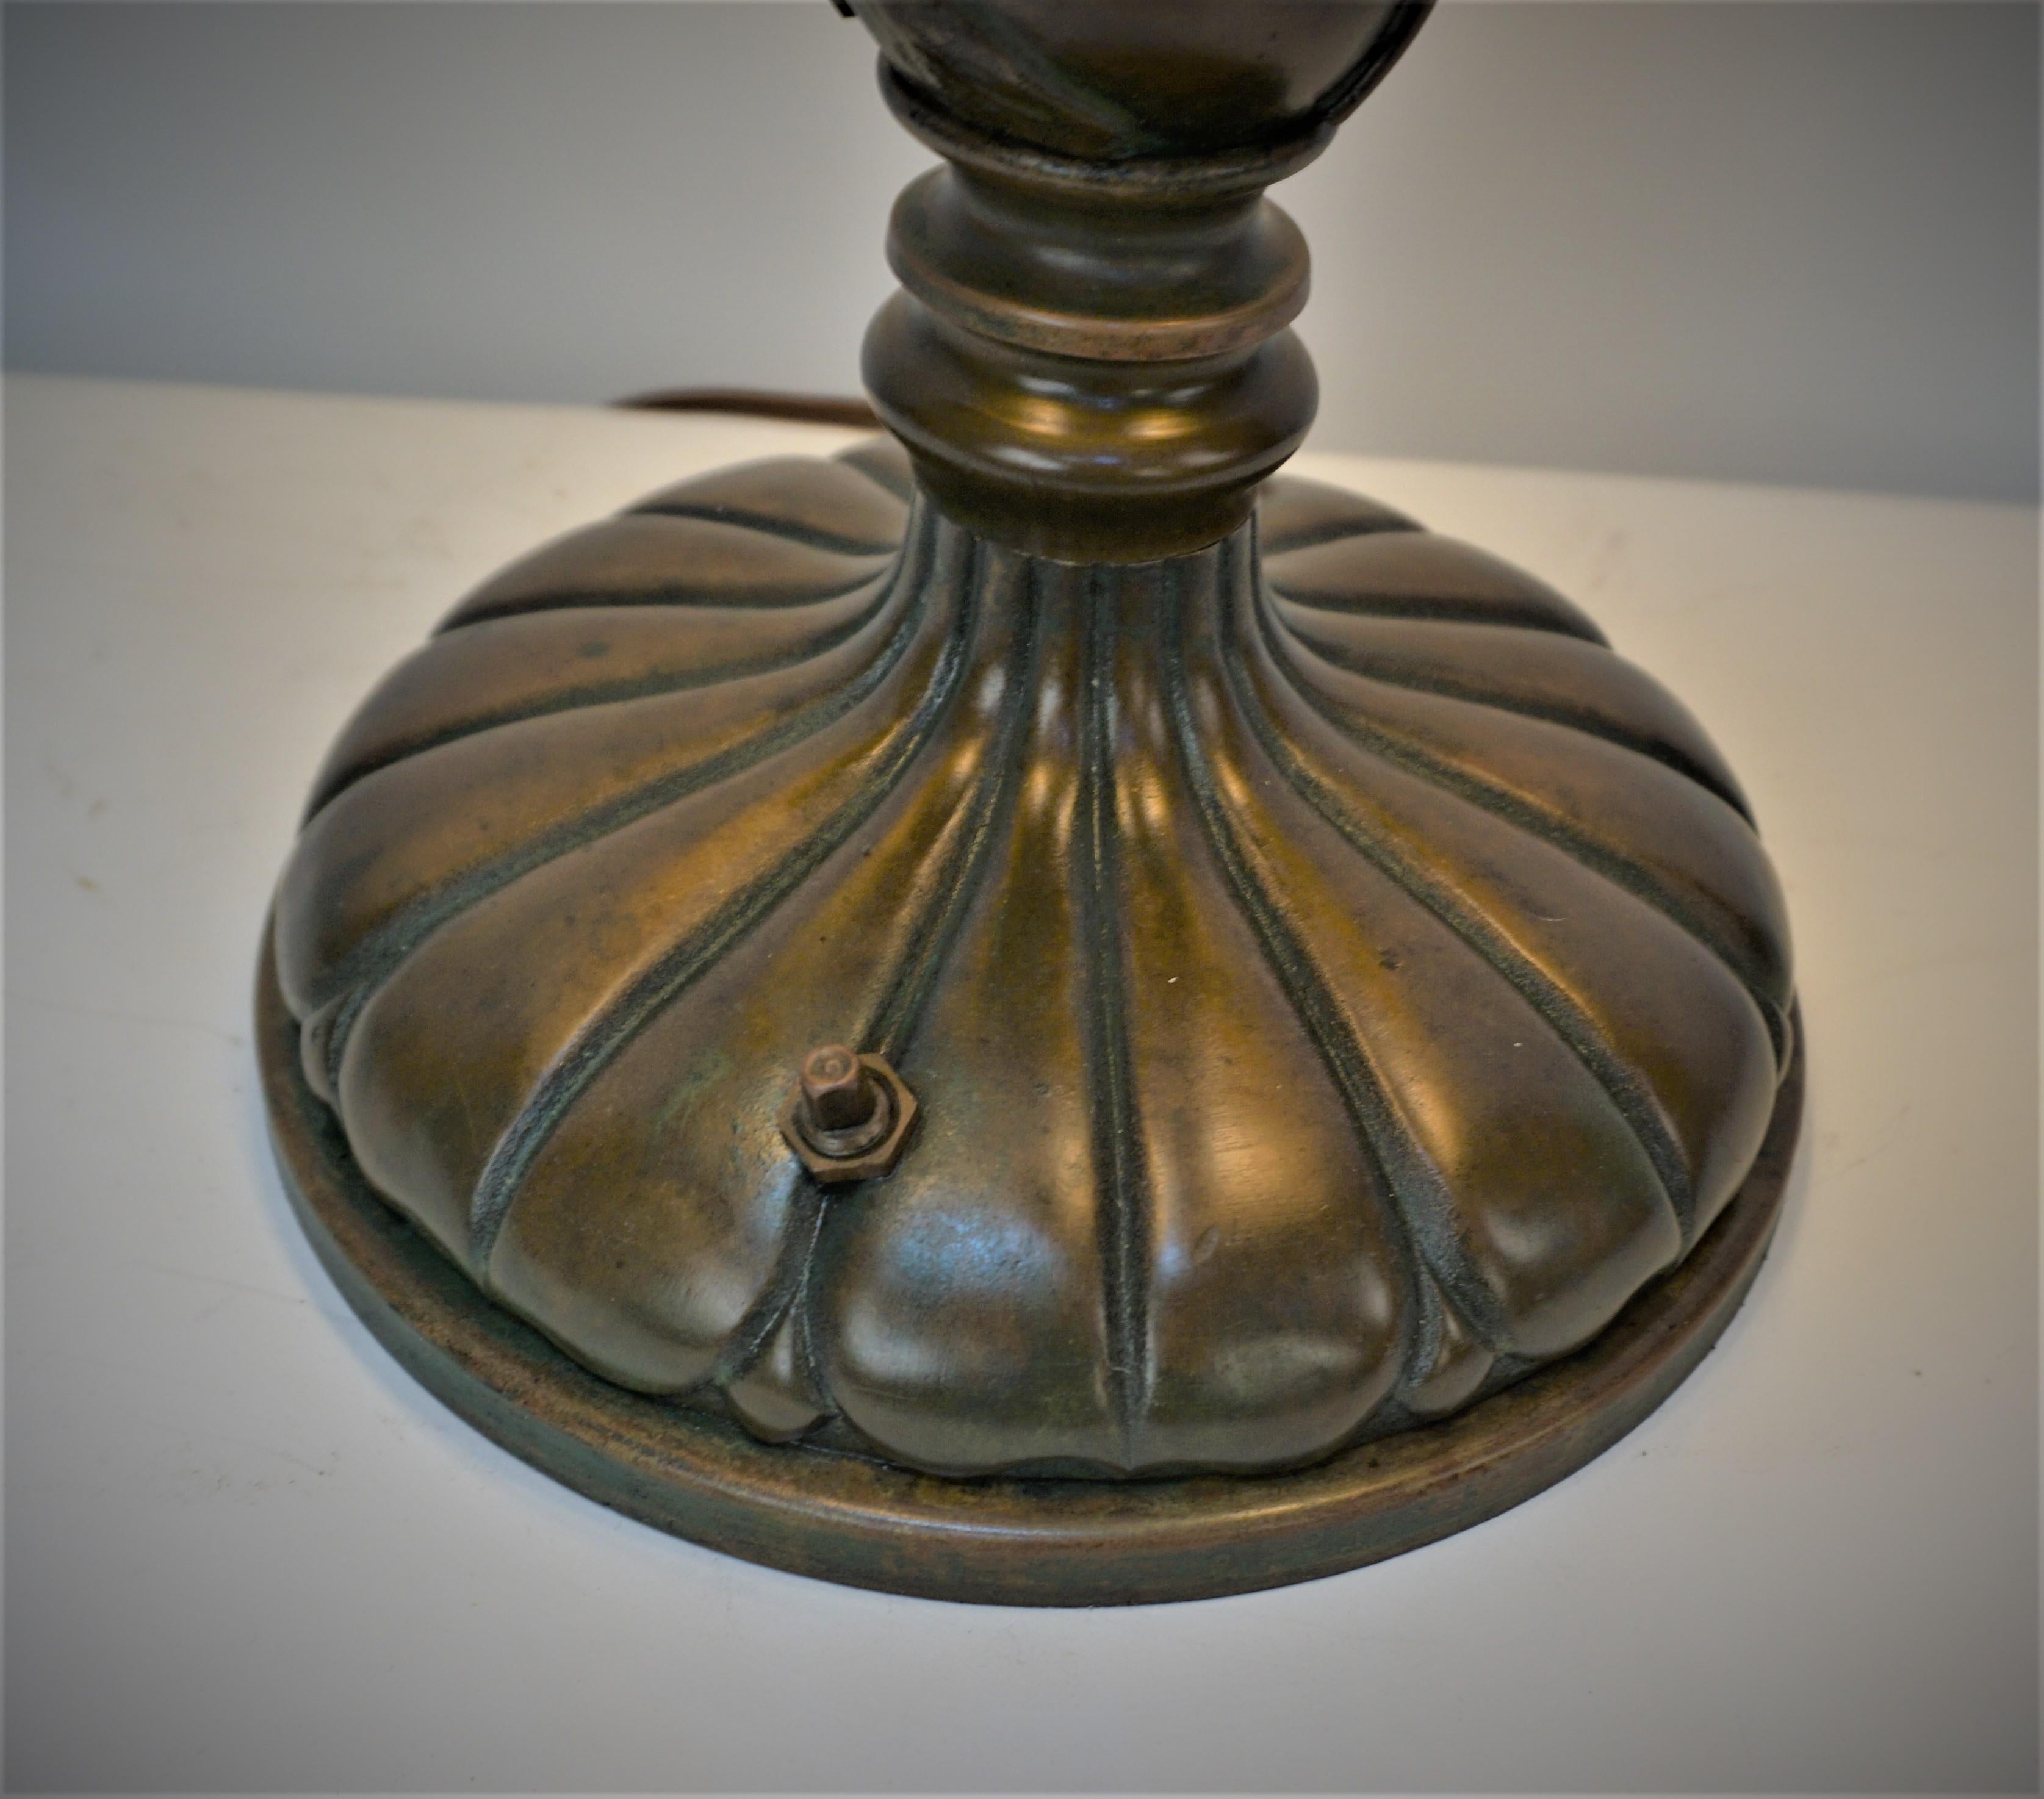 Schöne braune mit einem Hauch von grünem Finish Bronze Jugendstil-Tischlampe mit drei ziehen Kette Steckdosen und mit schwarzem Lampenschirm ausgestattet.